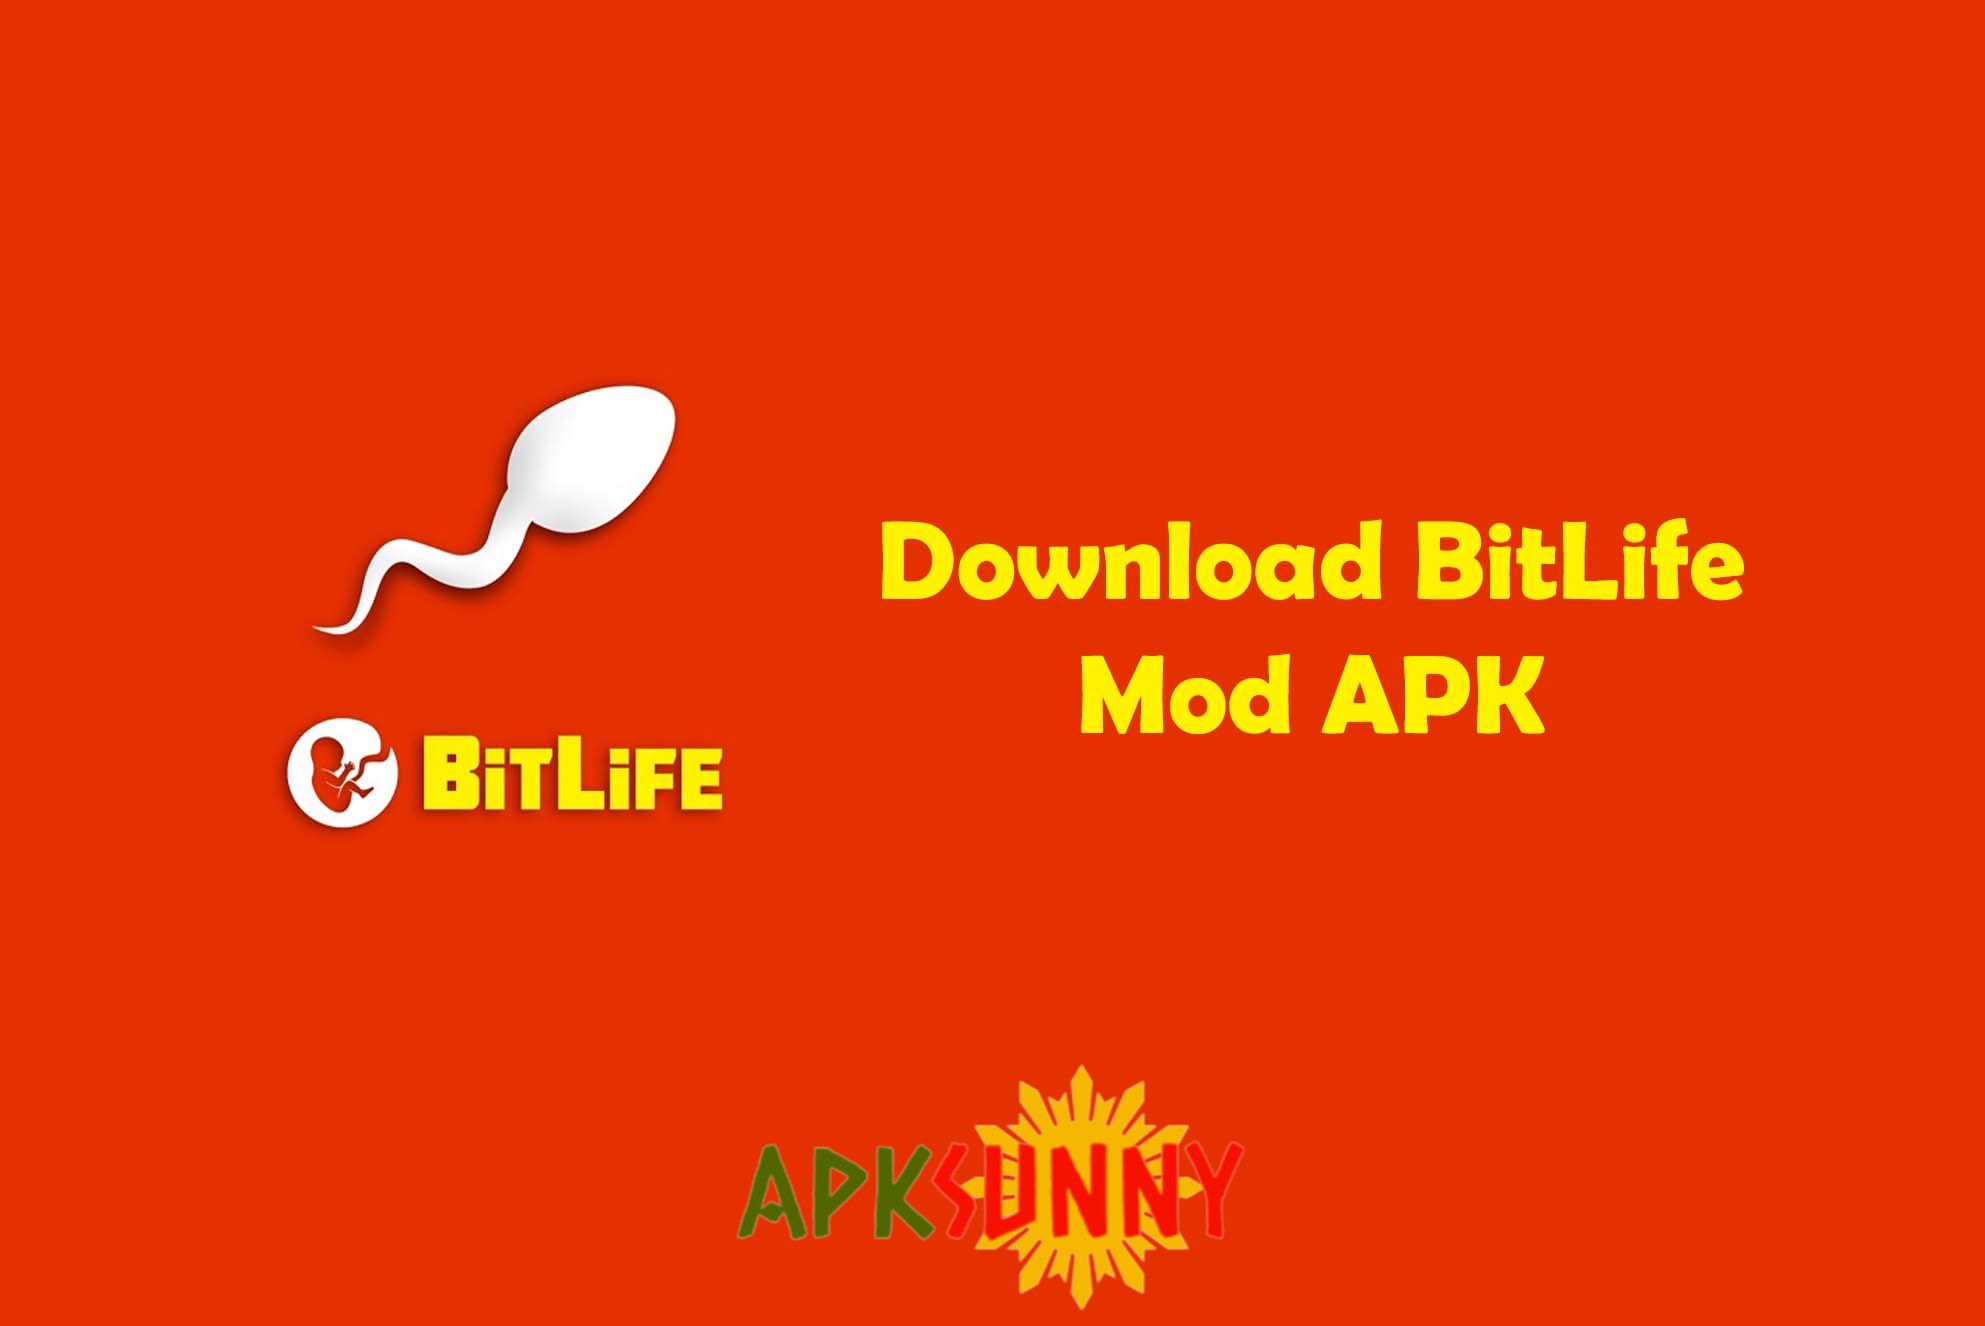 BitLife mod apk download